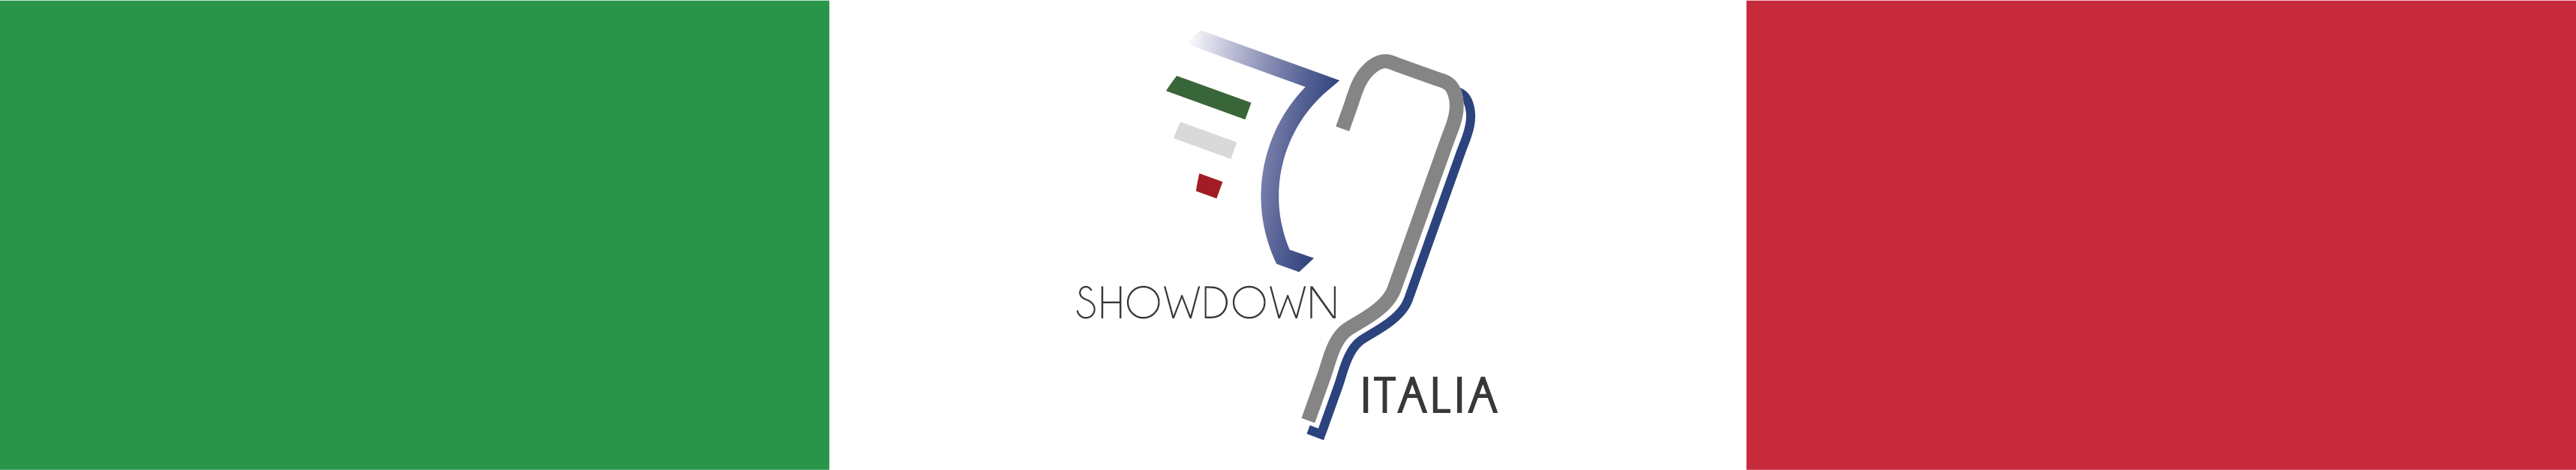 Tricolore italiano con al centro una paletta da Showdown alata e sotto la scritta Showdown Italia.